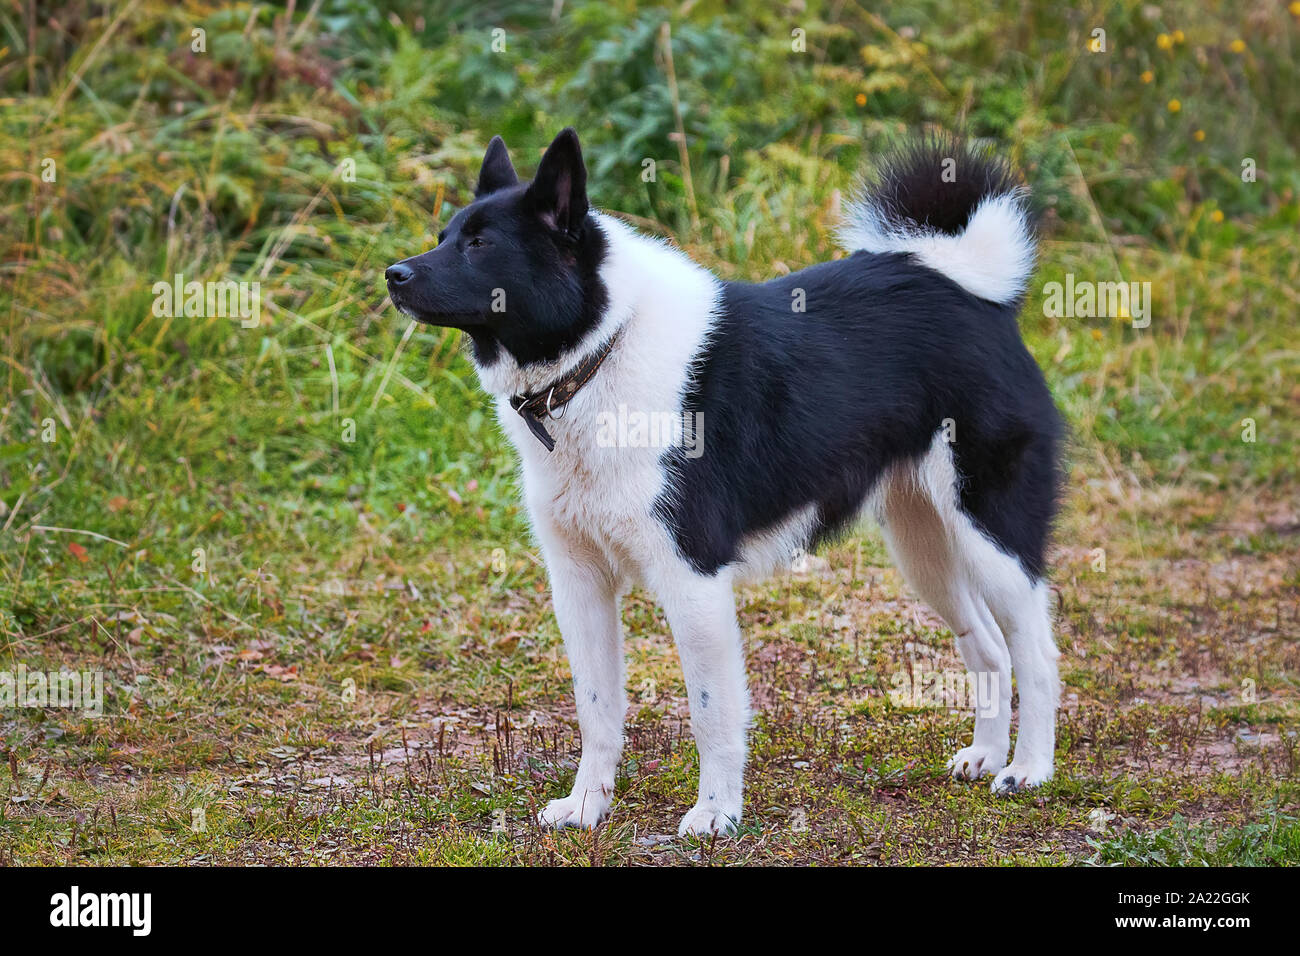 Die Waffe Hund russischen Europäische Laika liegt in der Nähe der Malamute  und Husky. Jagdhund für universelle Jagd in Borealen forists, Farbe  Kombinationen von blac Stockfotografie - Alamy